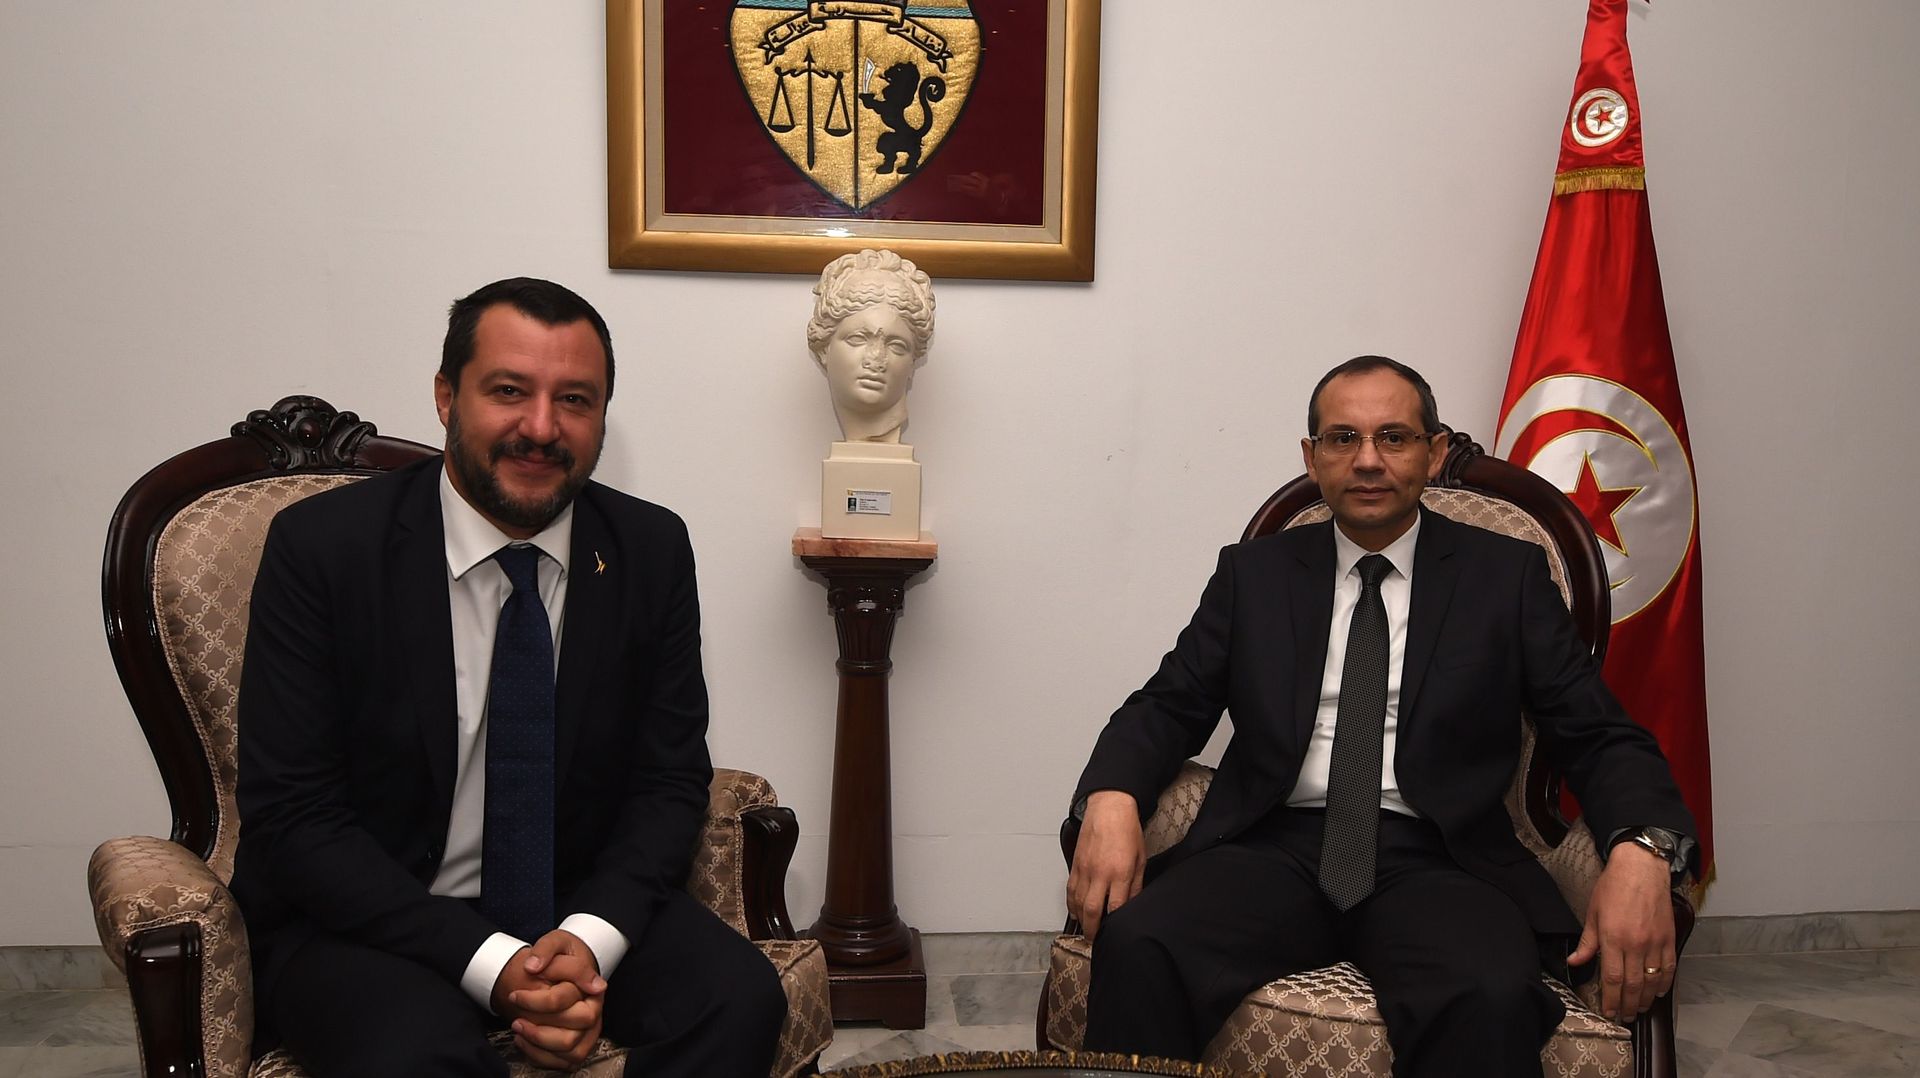 Matteo Salvini en Tunisie: une visite officielle qui inquiète la population